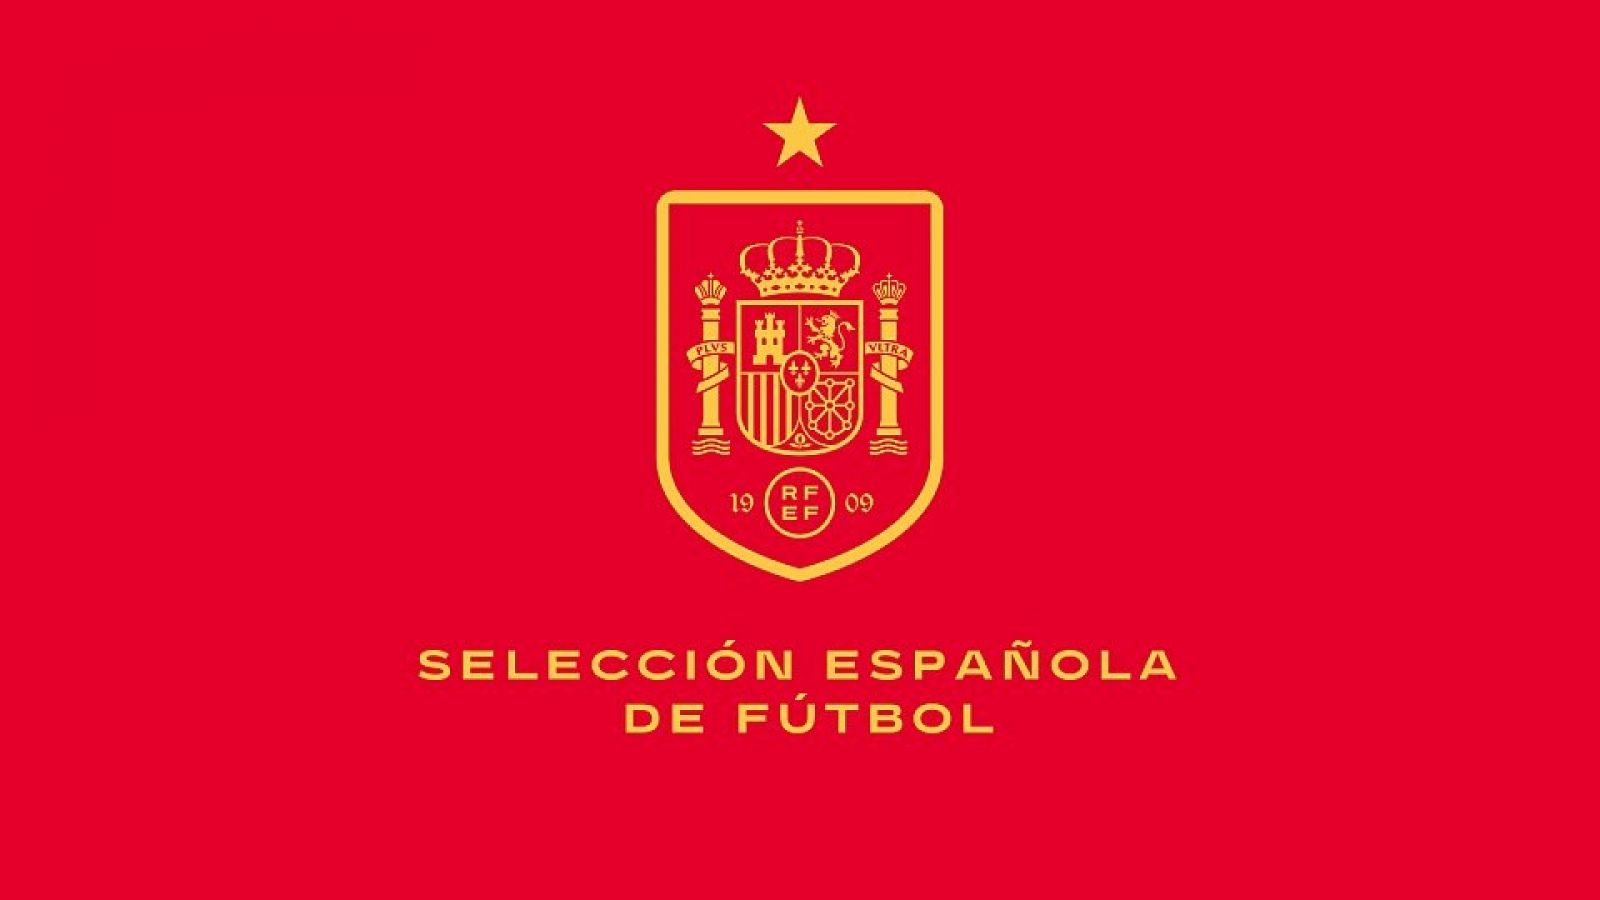 Escudo y logo de la selección española de fútbol.